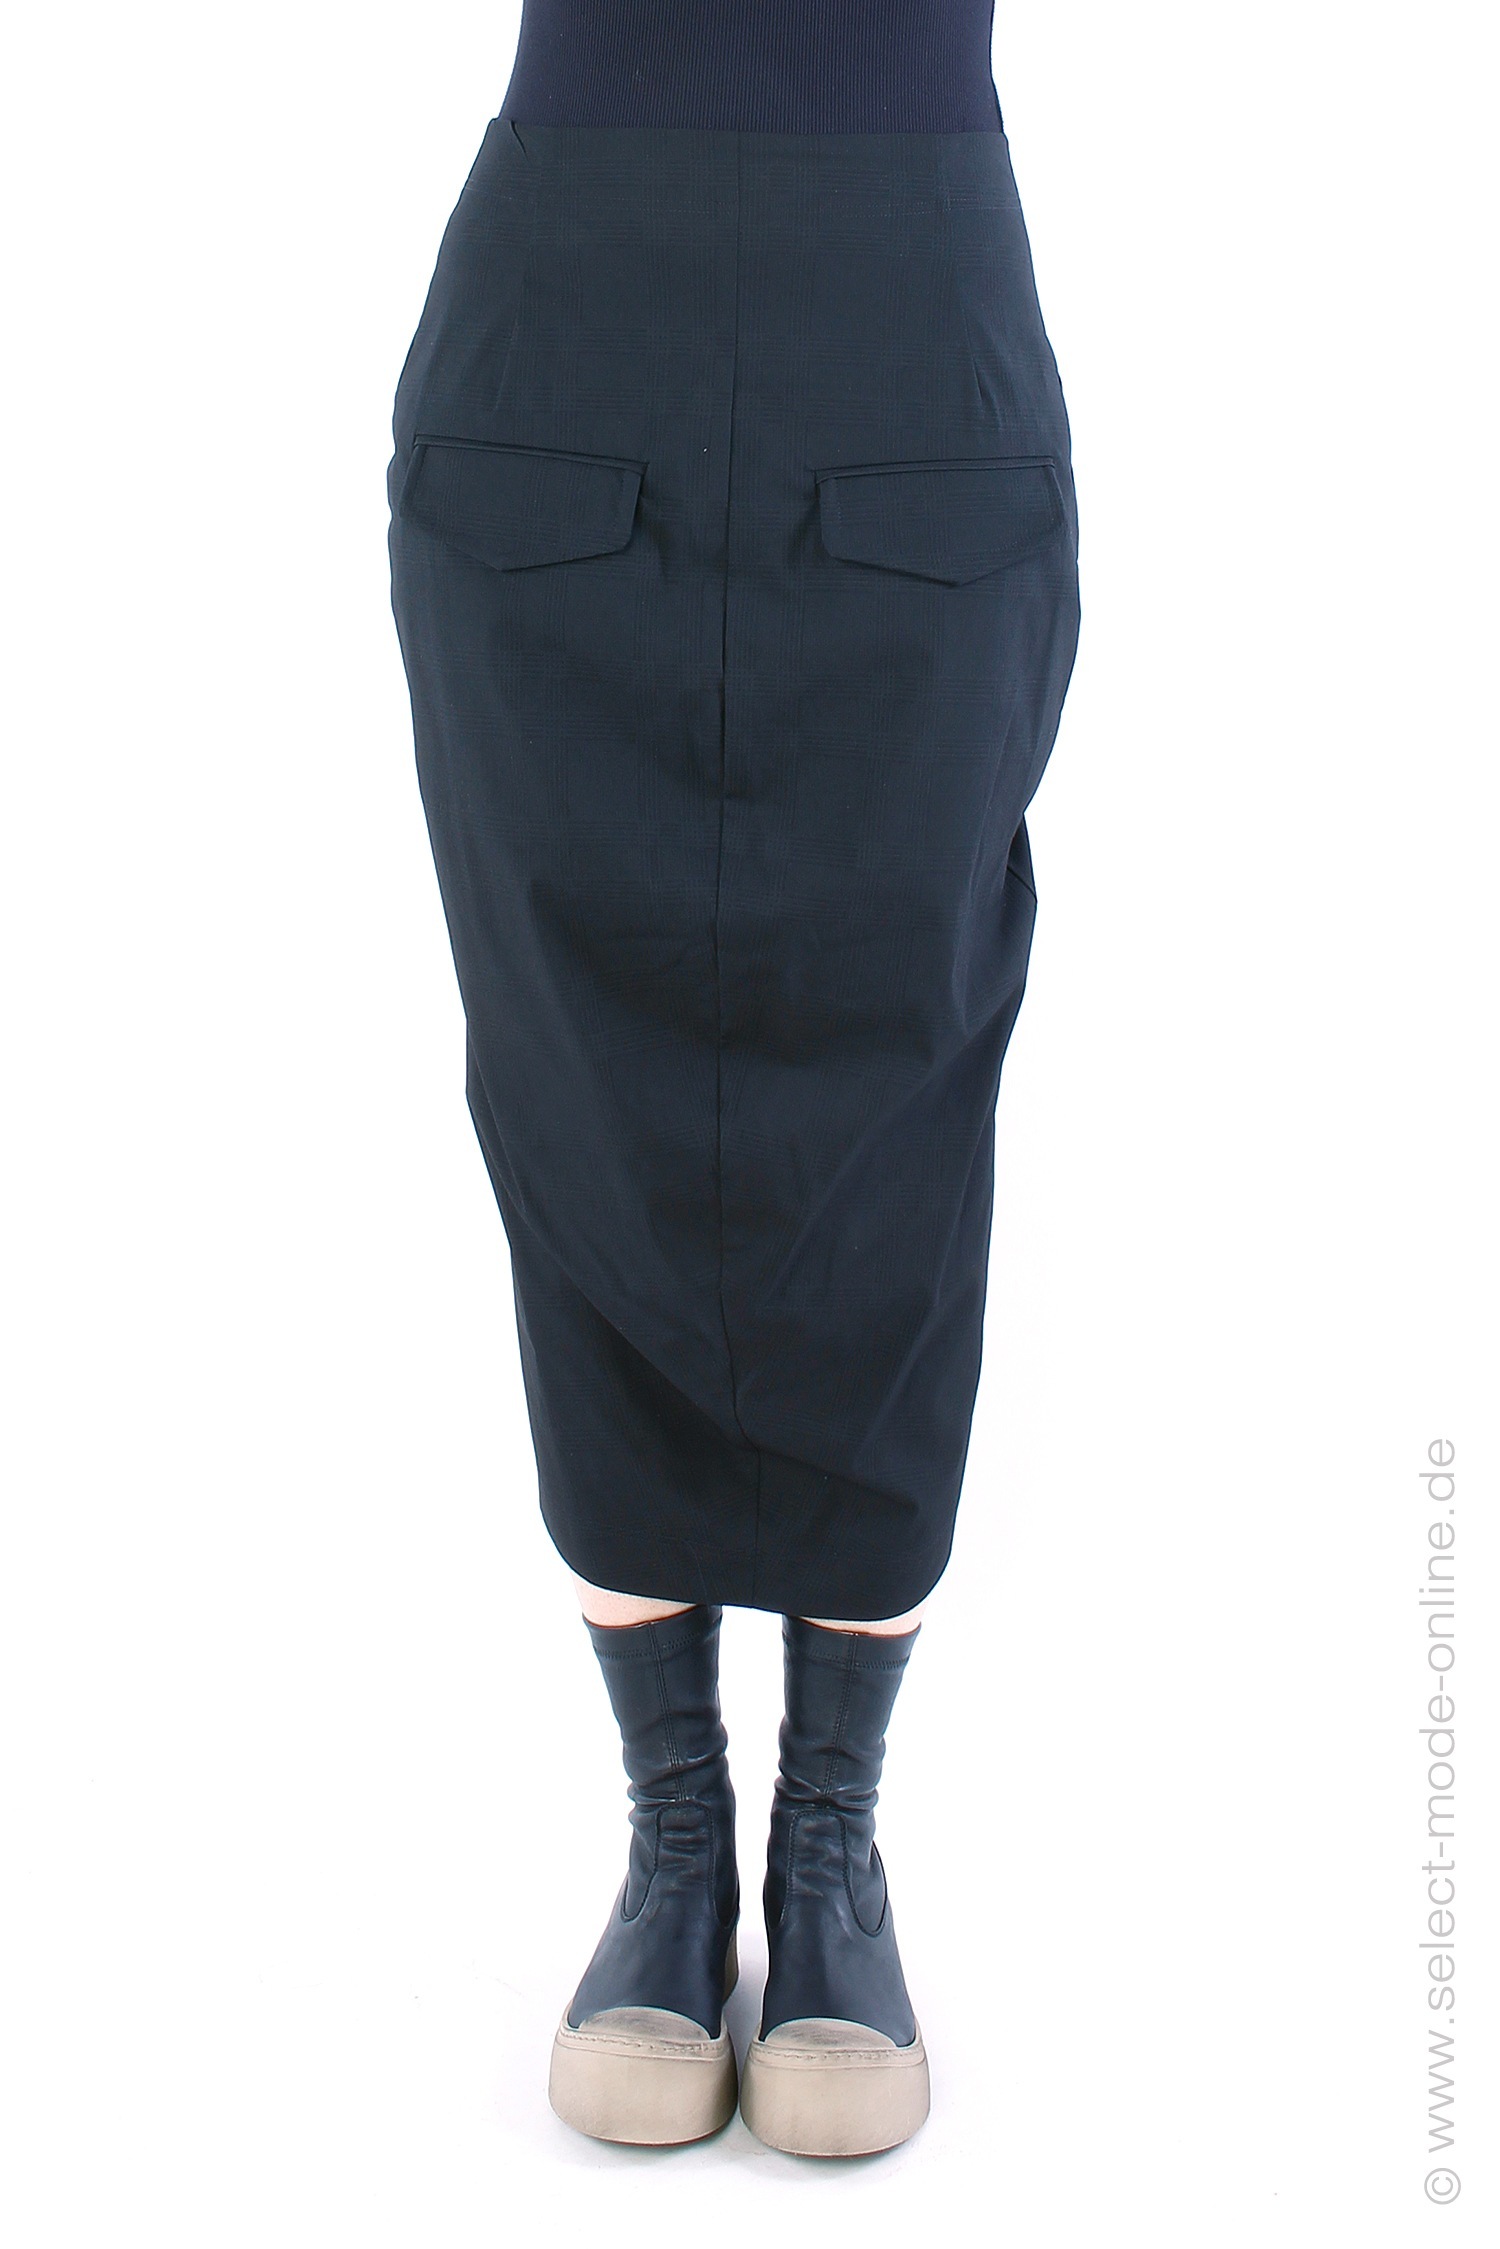 Stretch skirt - black check - 2221190305